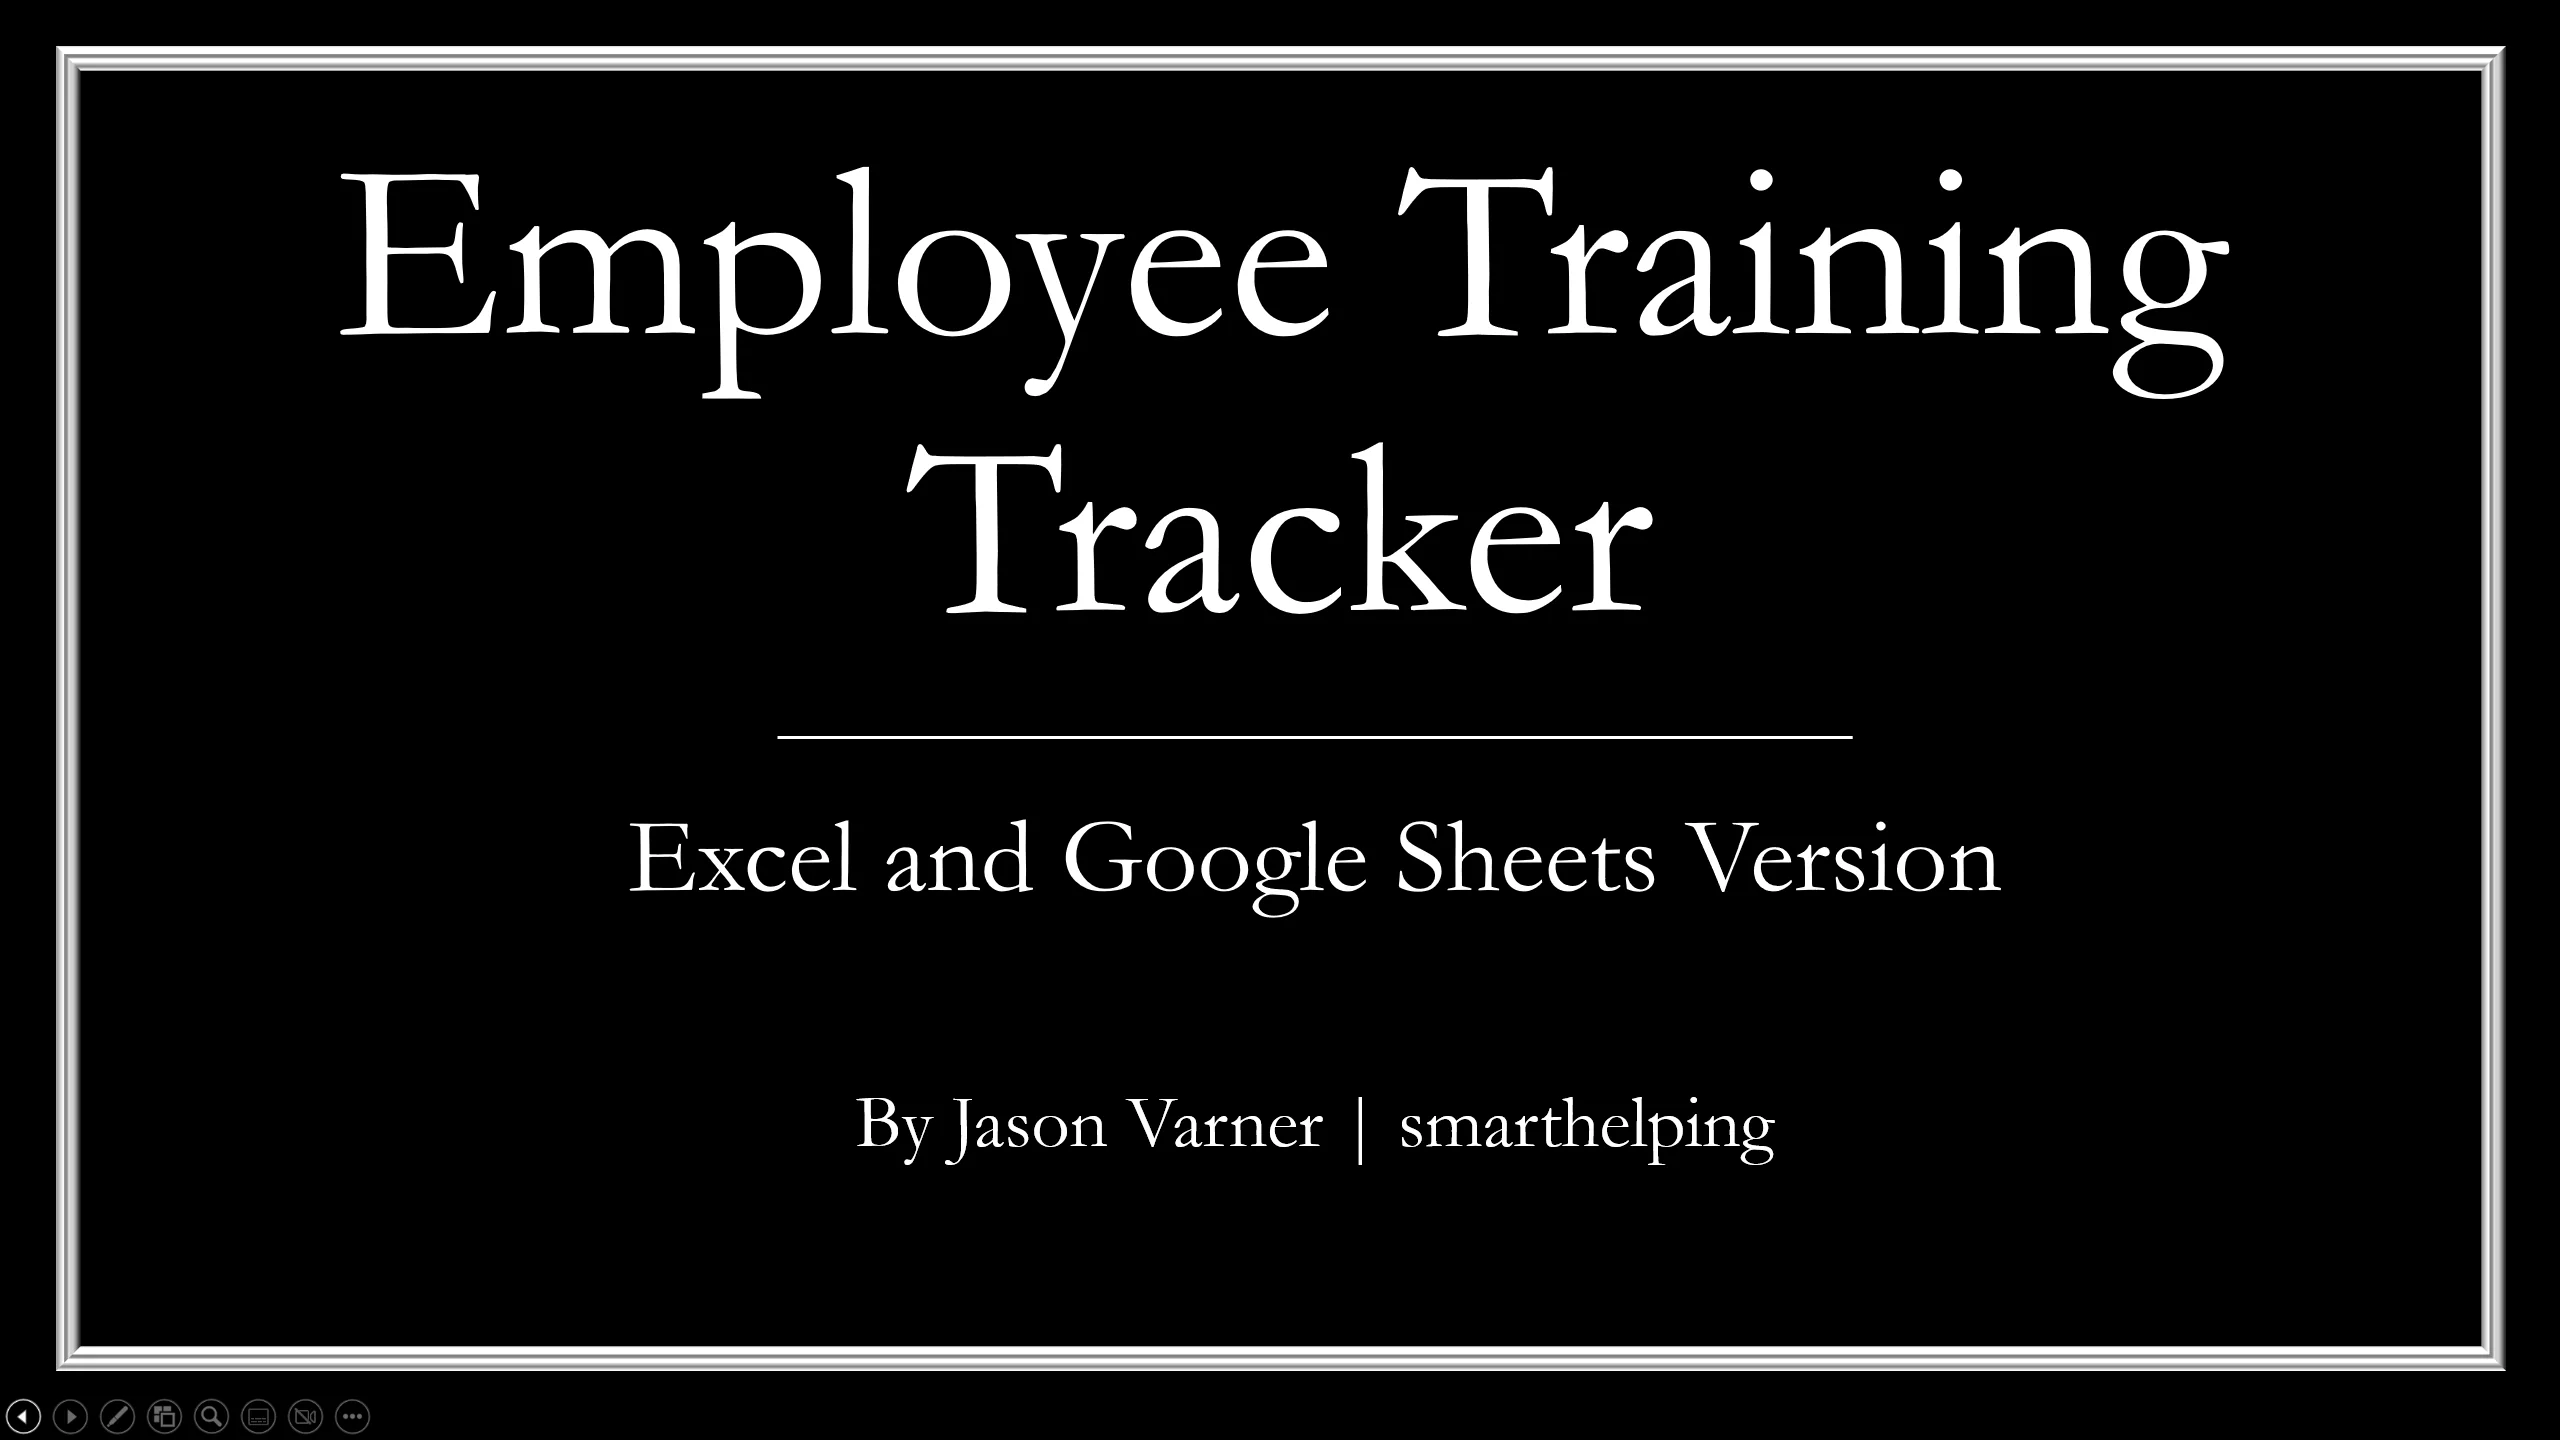 Employee Training Tracker